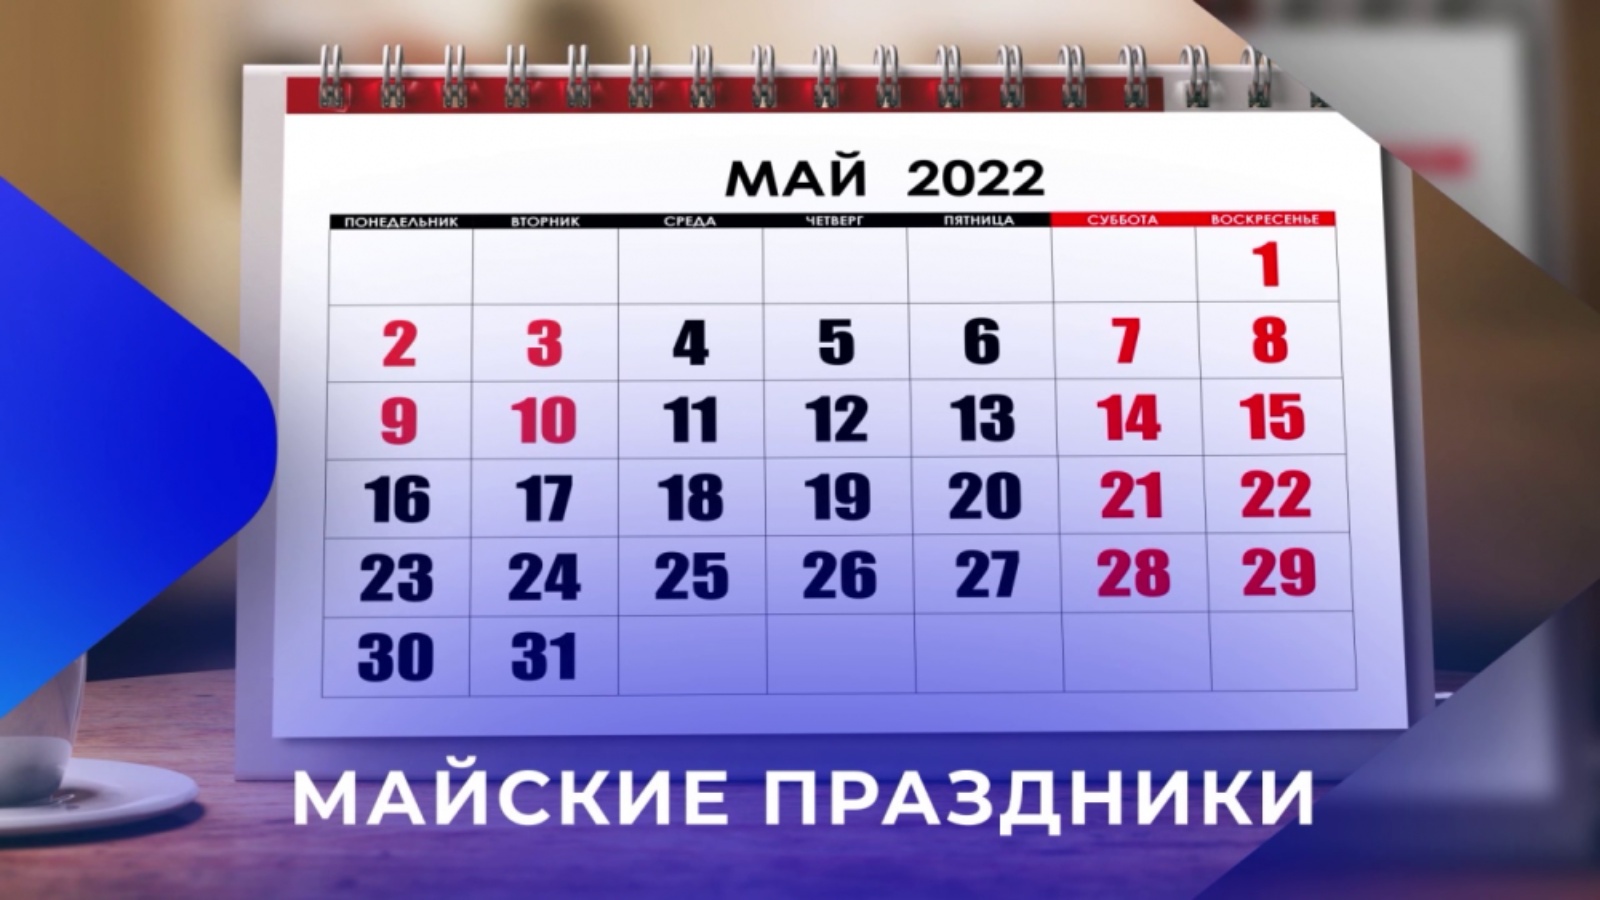 Выходные дни в апреле 2024 в татарстане. Праздники в мае. Рабочий график на майские праздники. Календарь майских праздников 2022. Выходные в мае 2022.